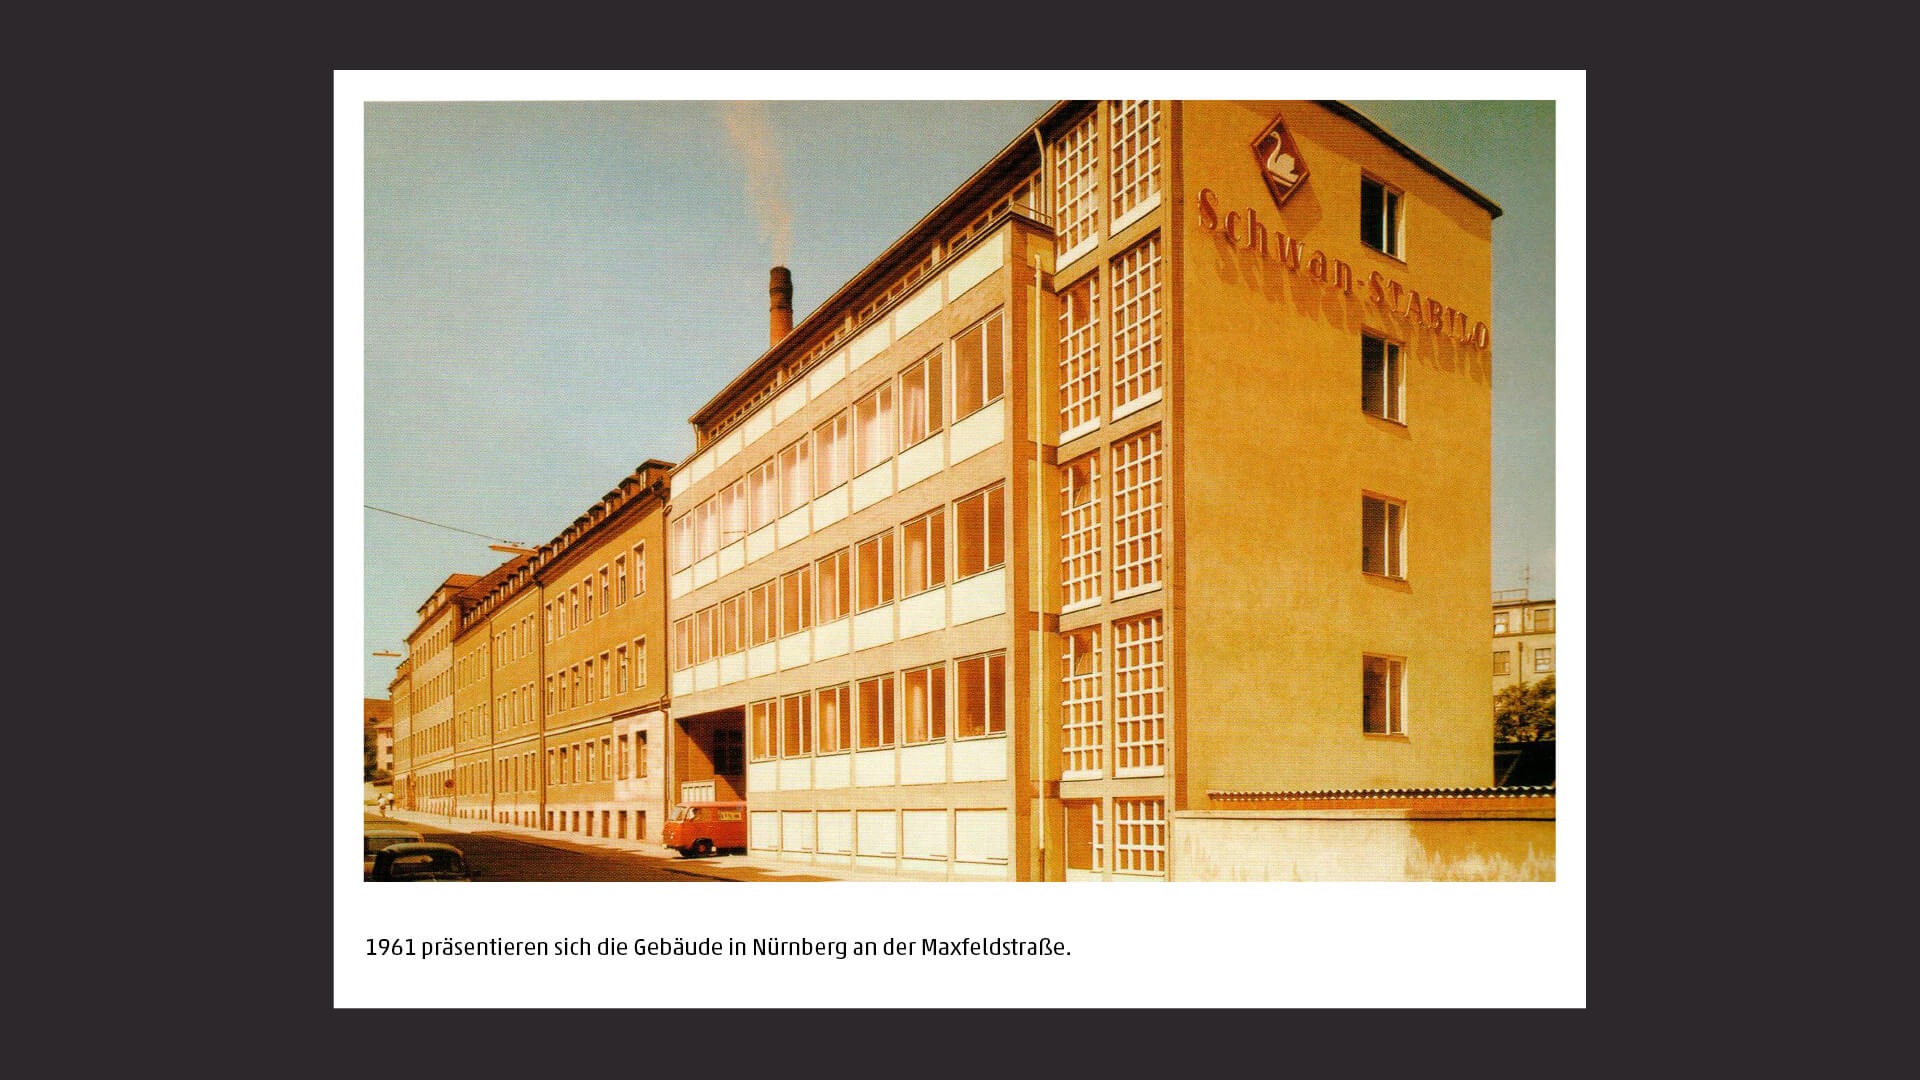 1961 präsentieren sich die Gebäude in Nürnberg an der Maxfeldstraße